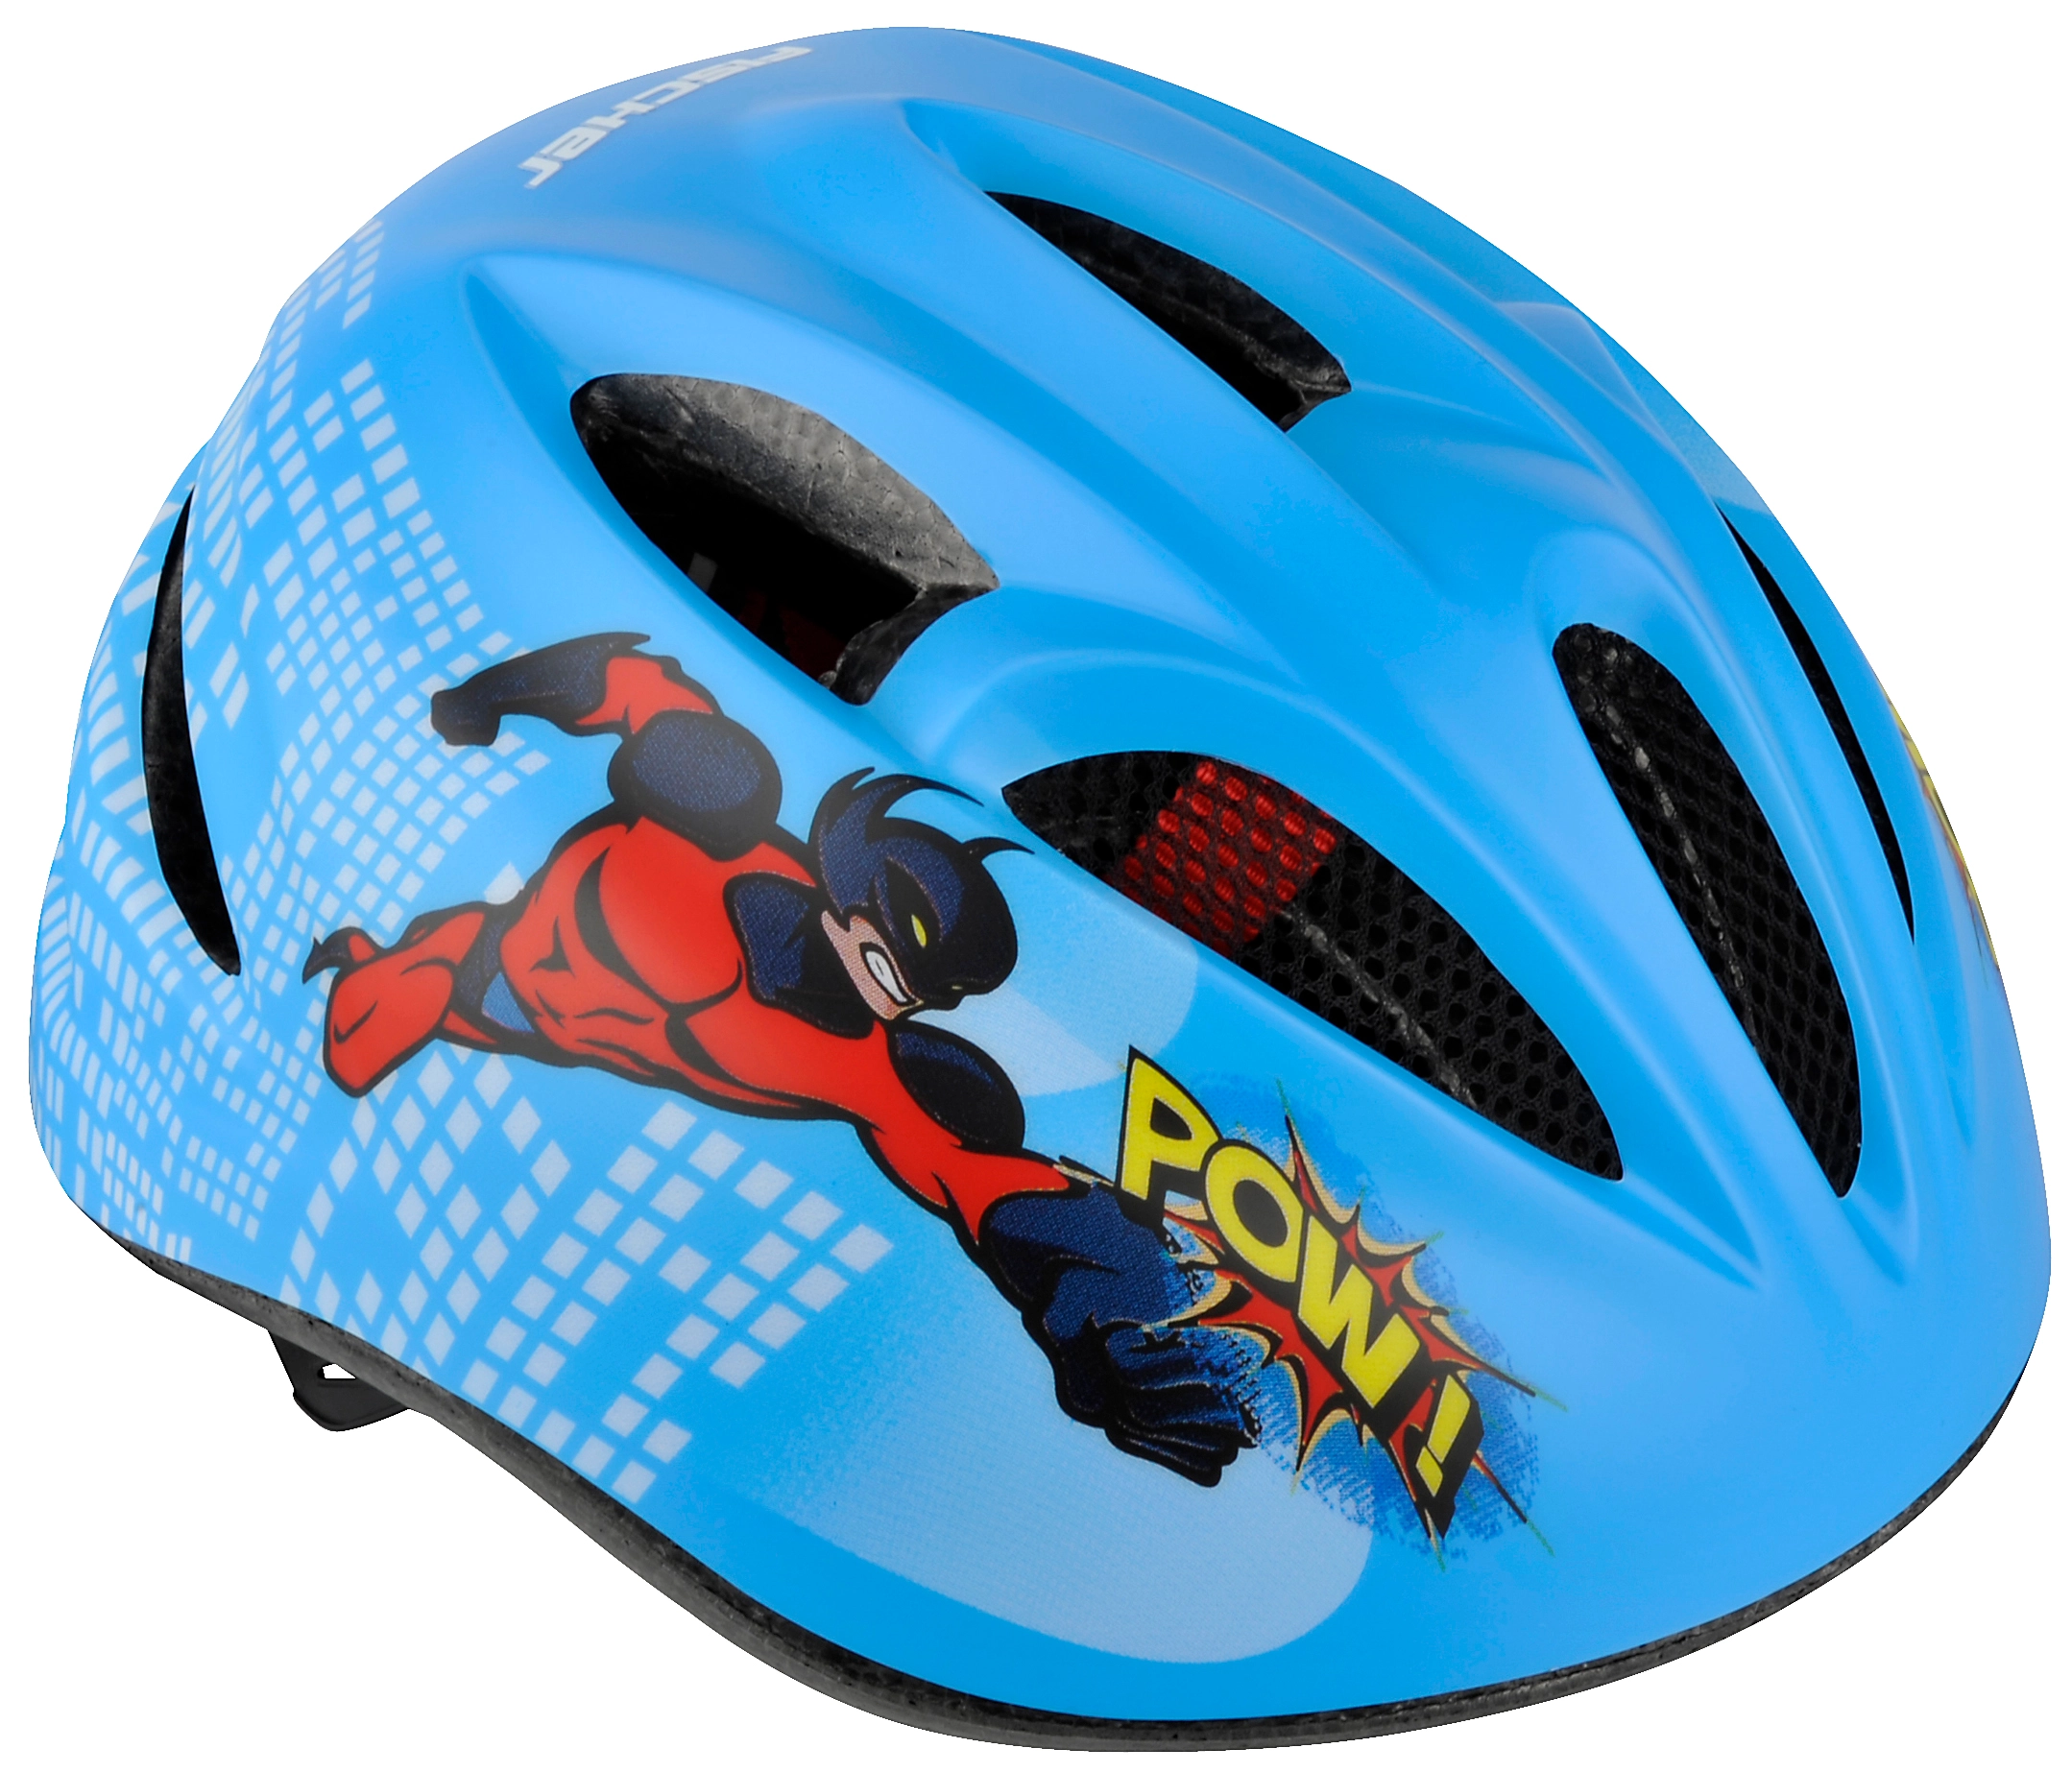 Fischer Fahrrad-Helm für Kinder Motiv kaufen bei Blau Gr. OBI Comic S/M